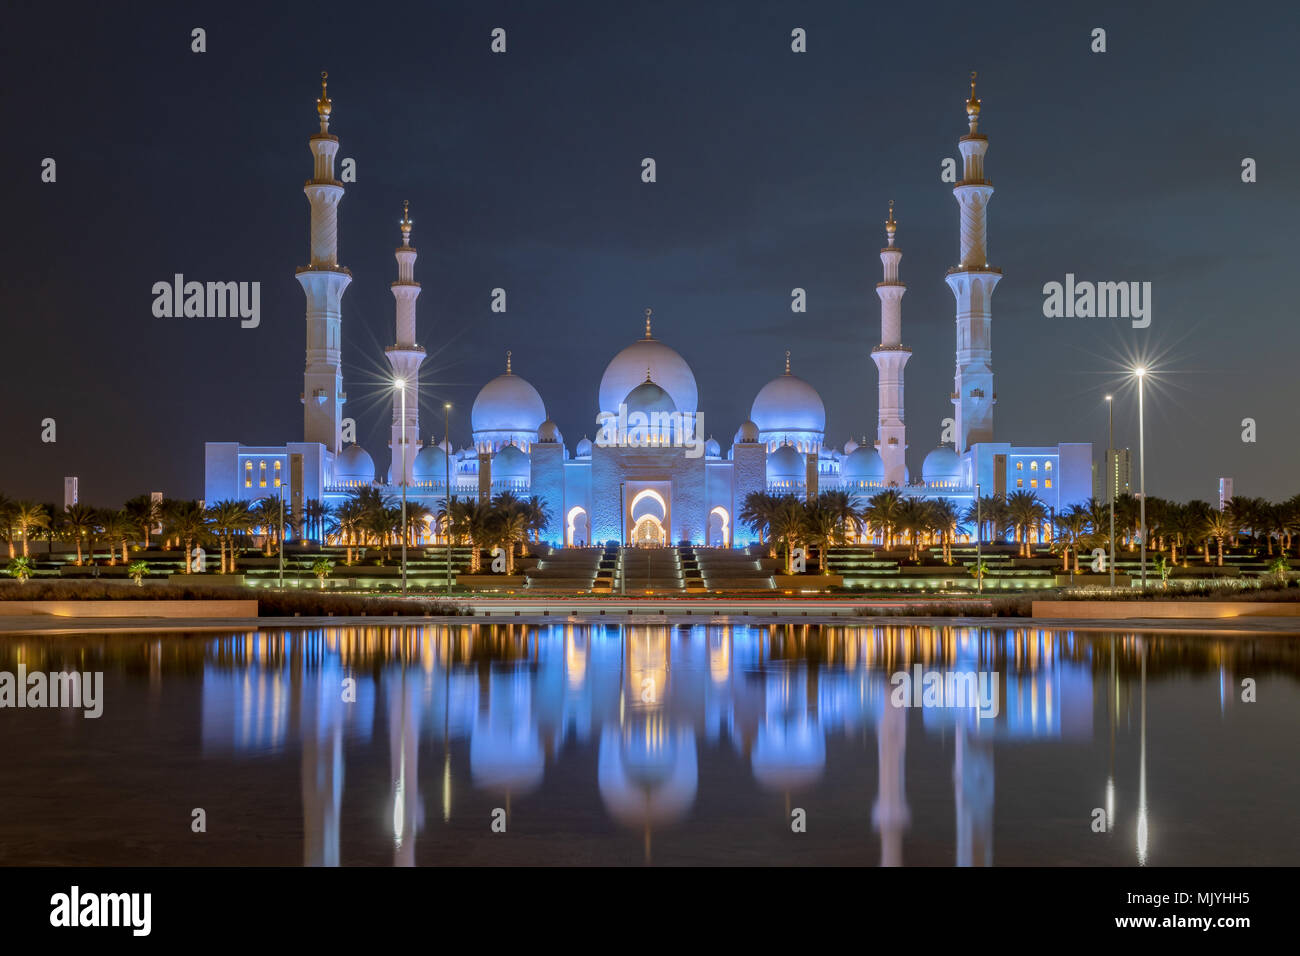 Sheikh Zayed Moschee in Abu Dhabi, Hauptstadt der Vereinigten Arabischen Emirate. Moschee ist von Italienischen weißem Marmor gebaut. Reflexion in See Stockfoto